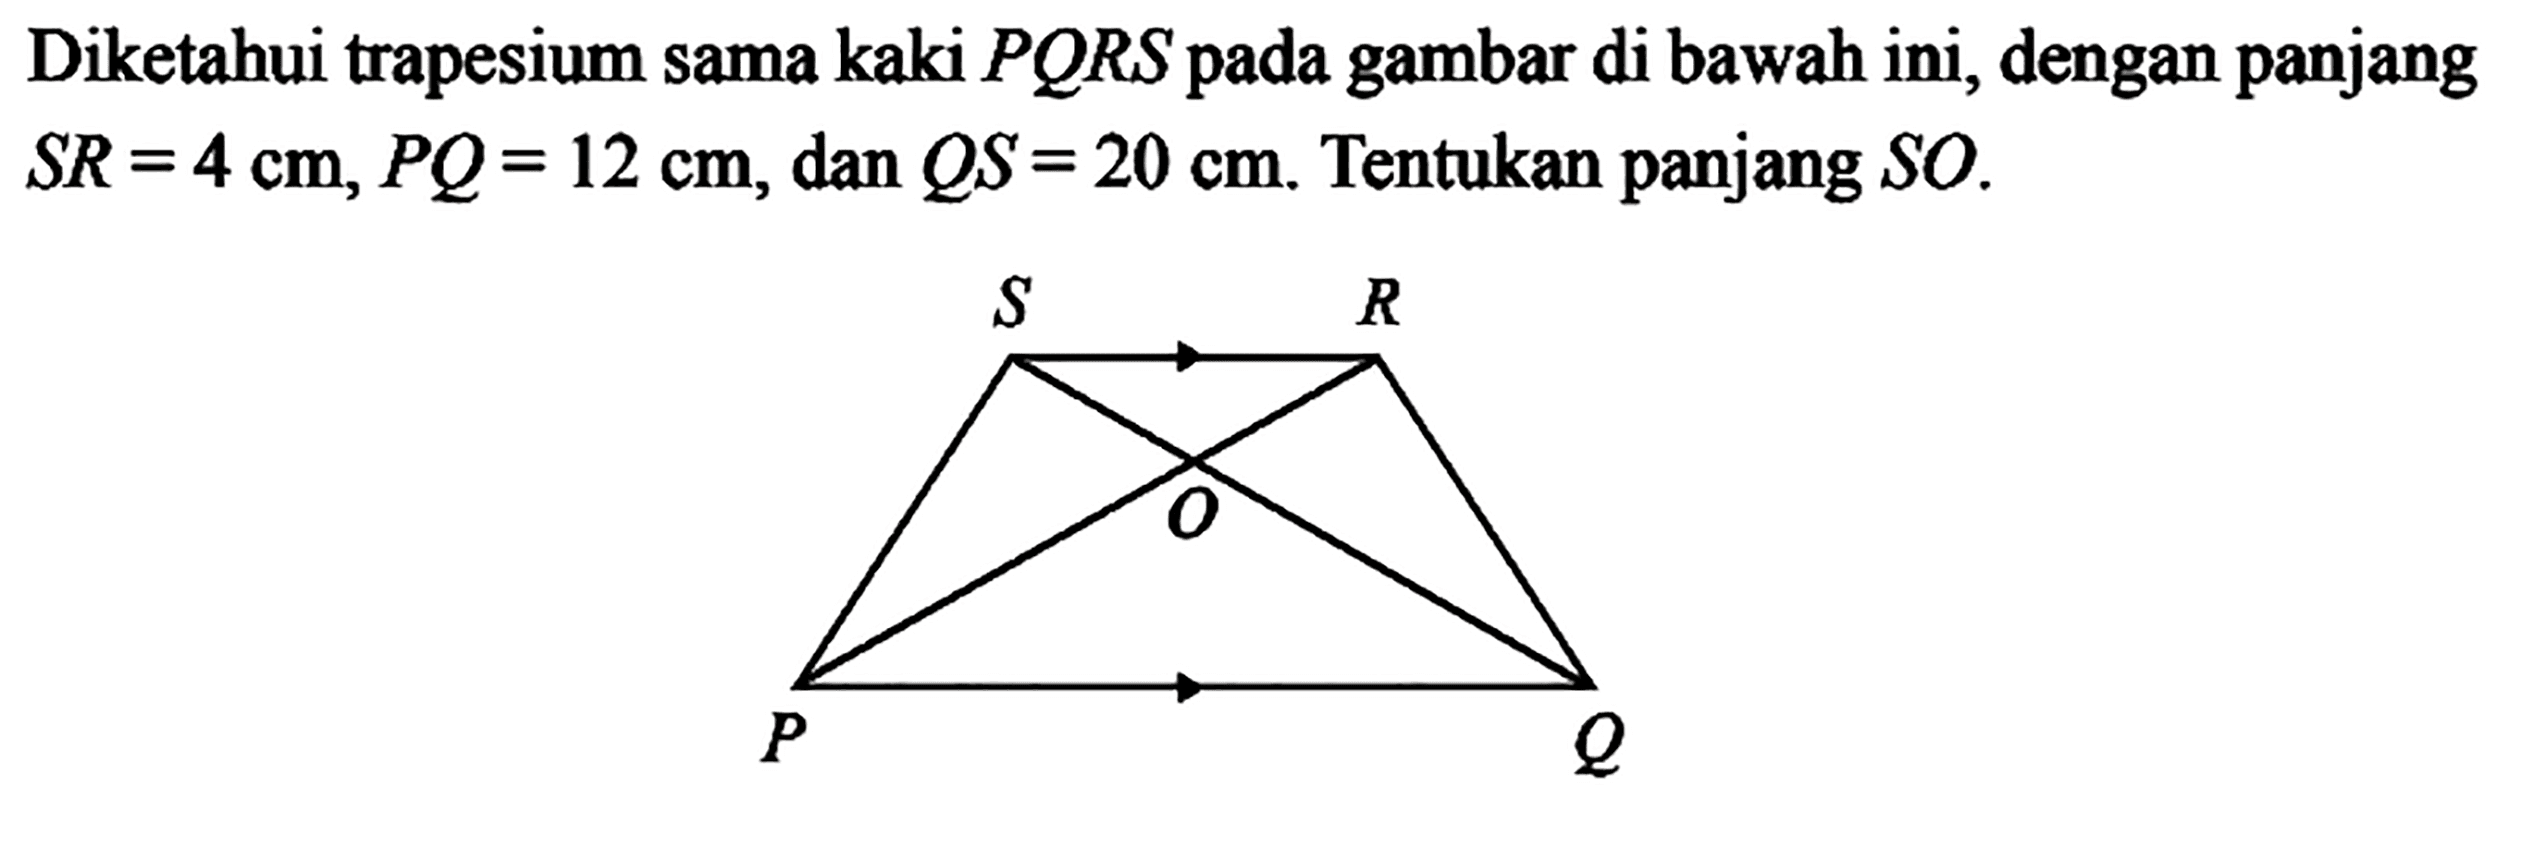 Diketahui trapesium sama kaki PQRS pada gambar di bawah ini, dengan panjang SR=4 cm, PQ=12 cm, dan QS=20 cm. Tentukan panjang SO.